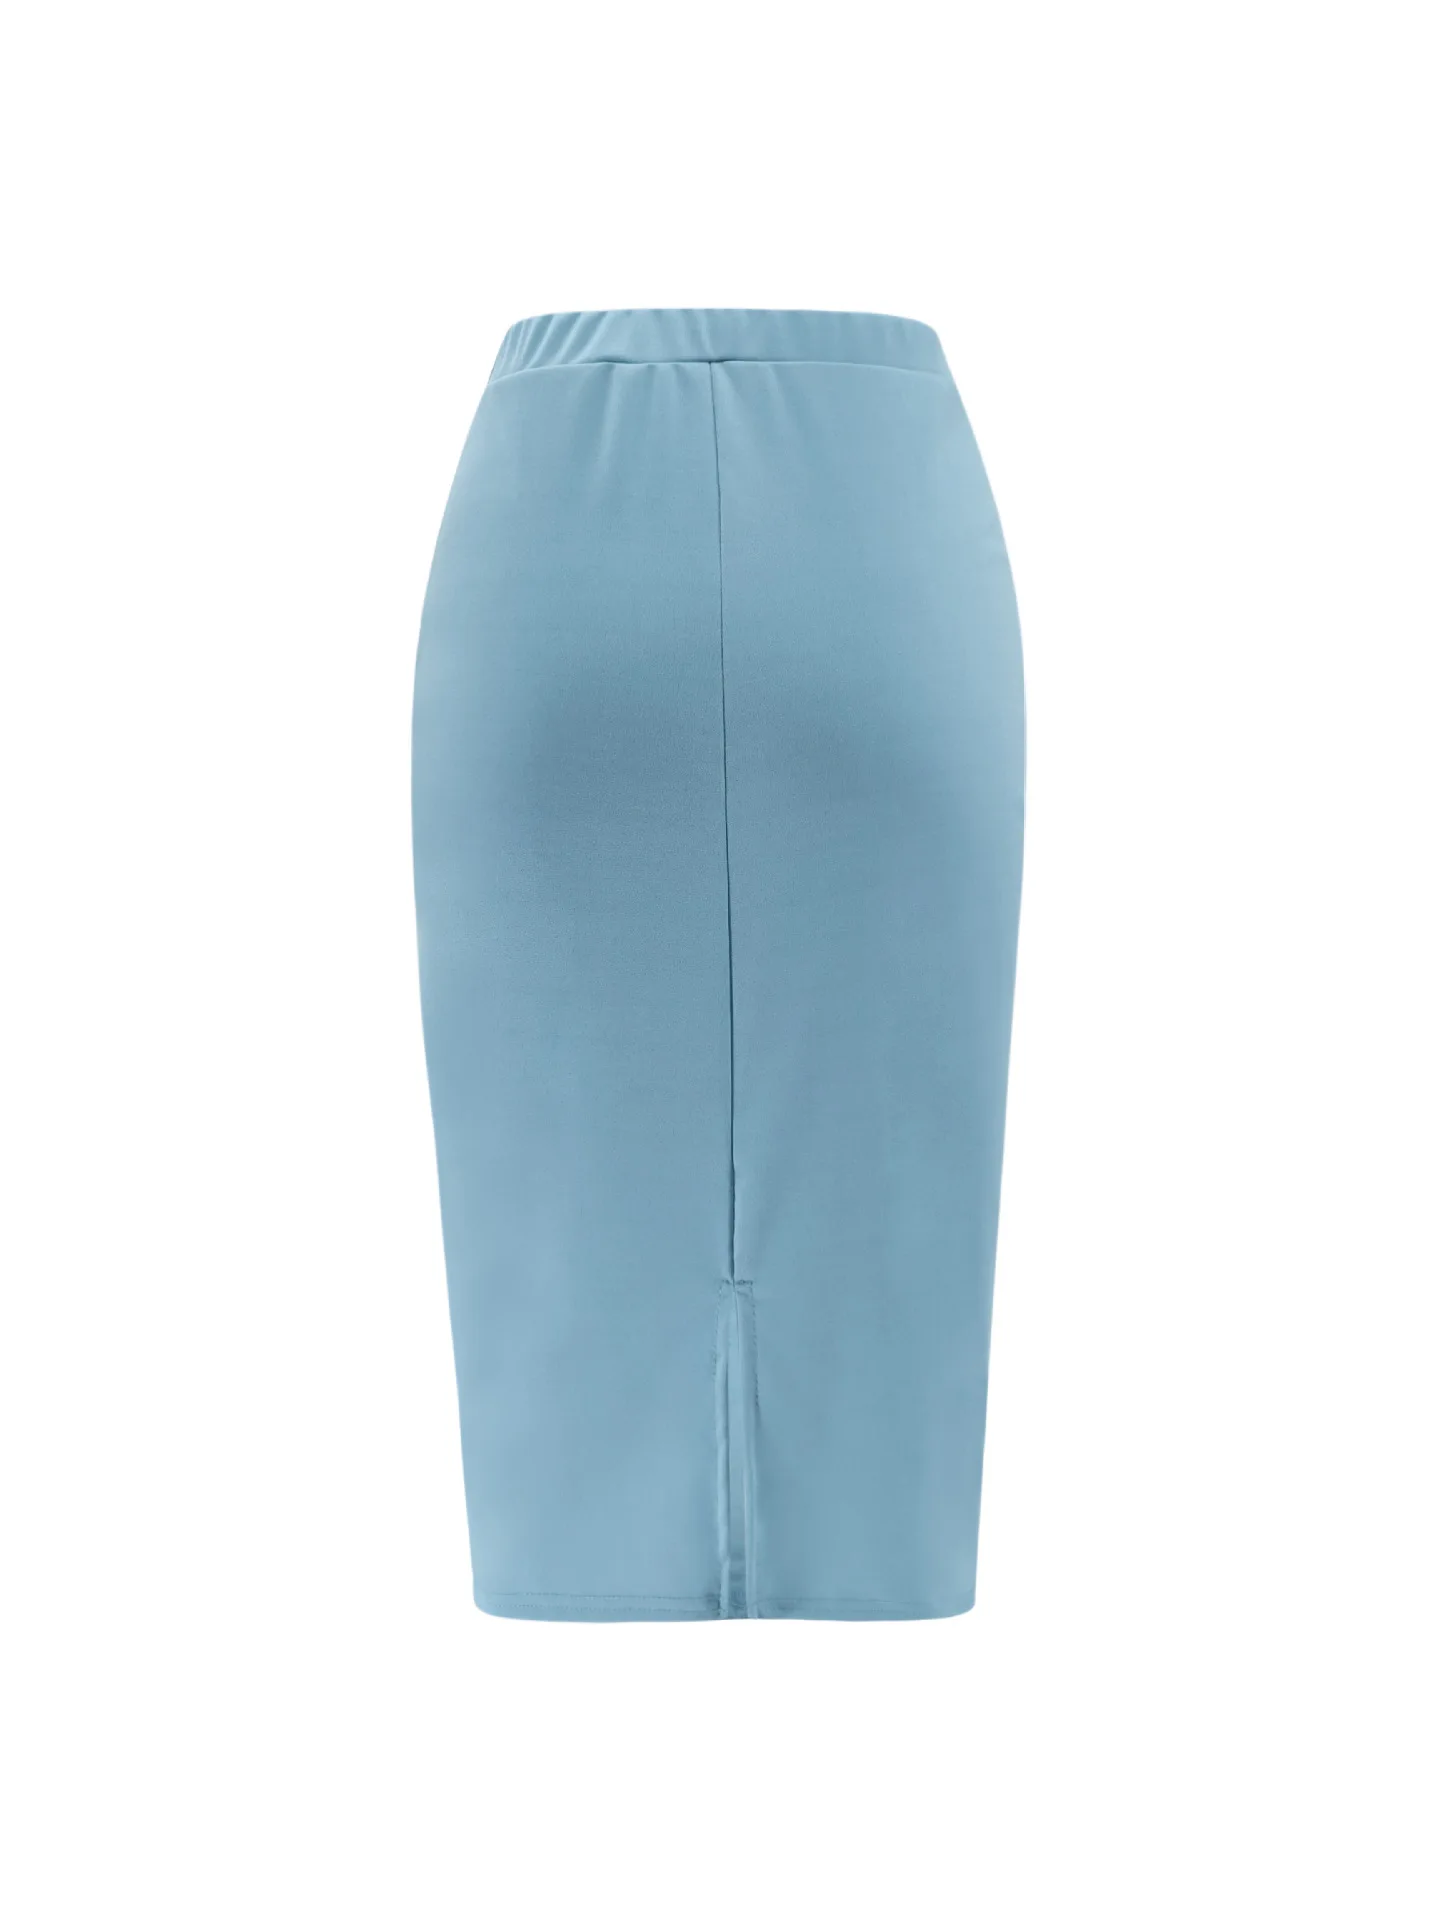 LOGAMI юбка-карандаш с высокой талией и пуговицами, женская сексуальная юбка миди, женская тонкая юбка на весну и лето